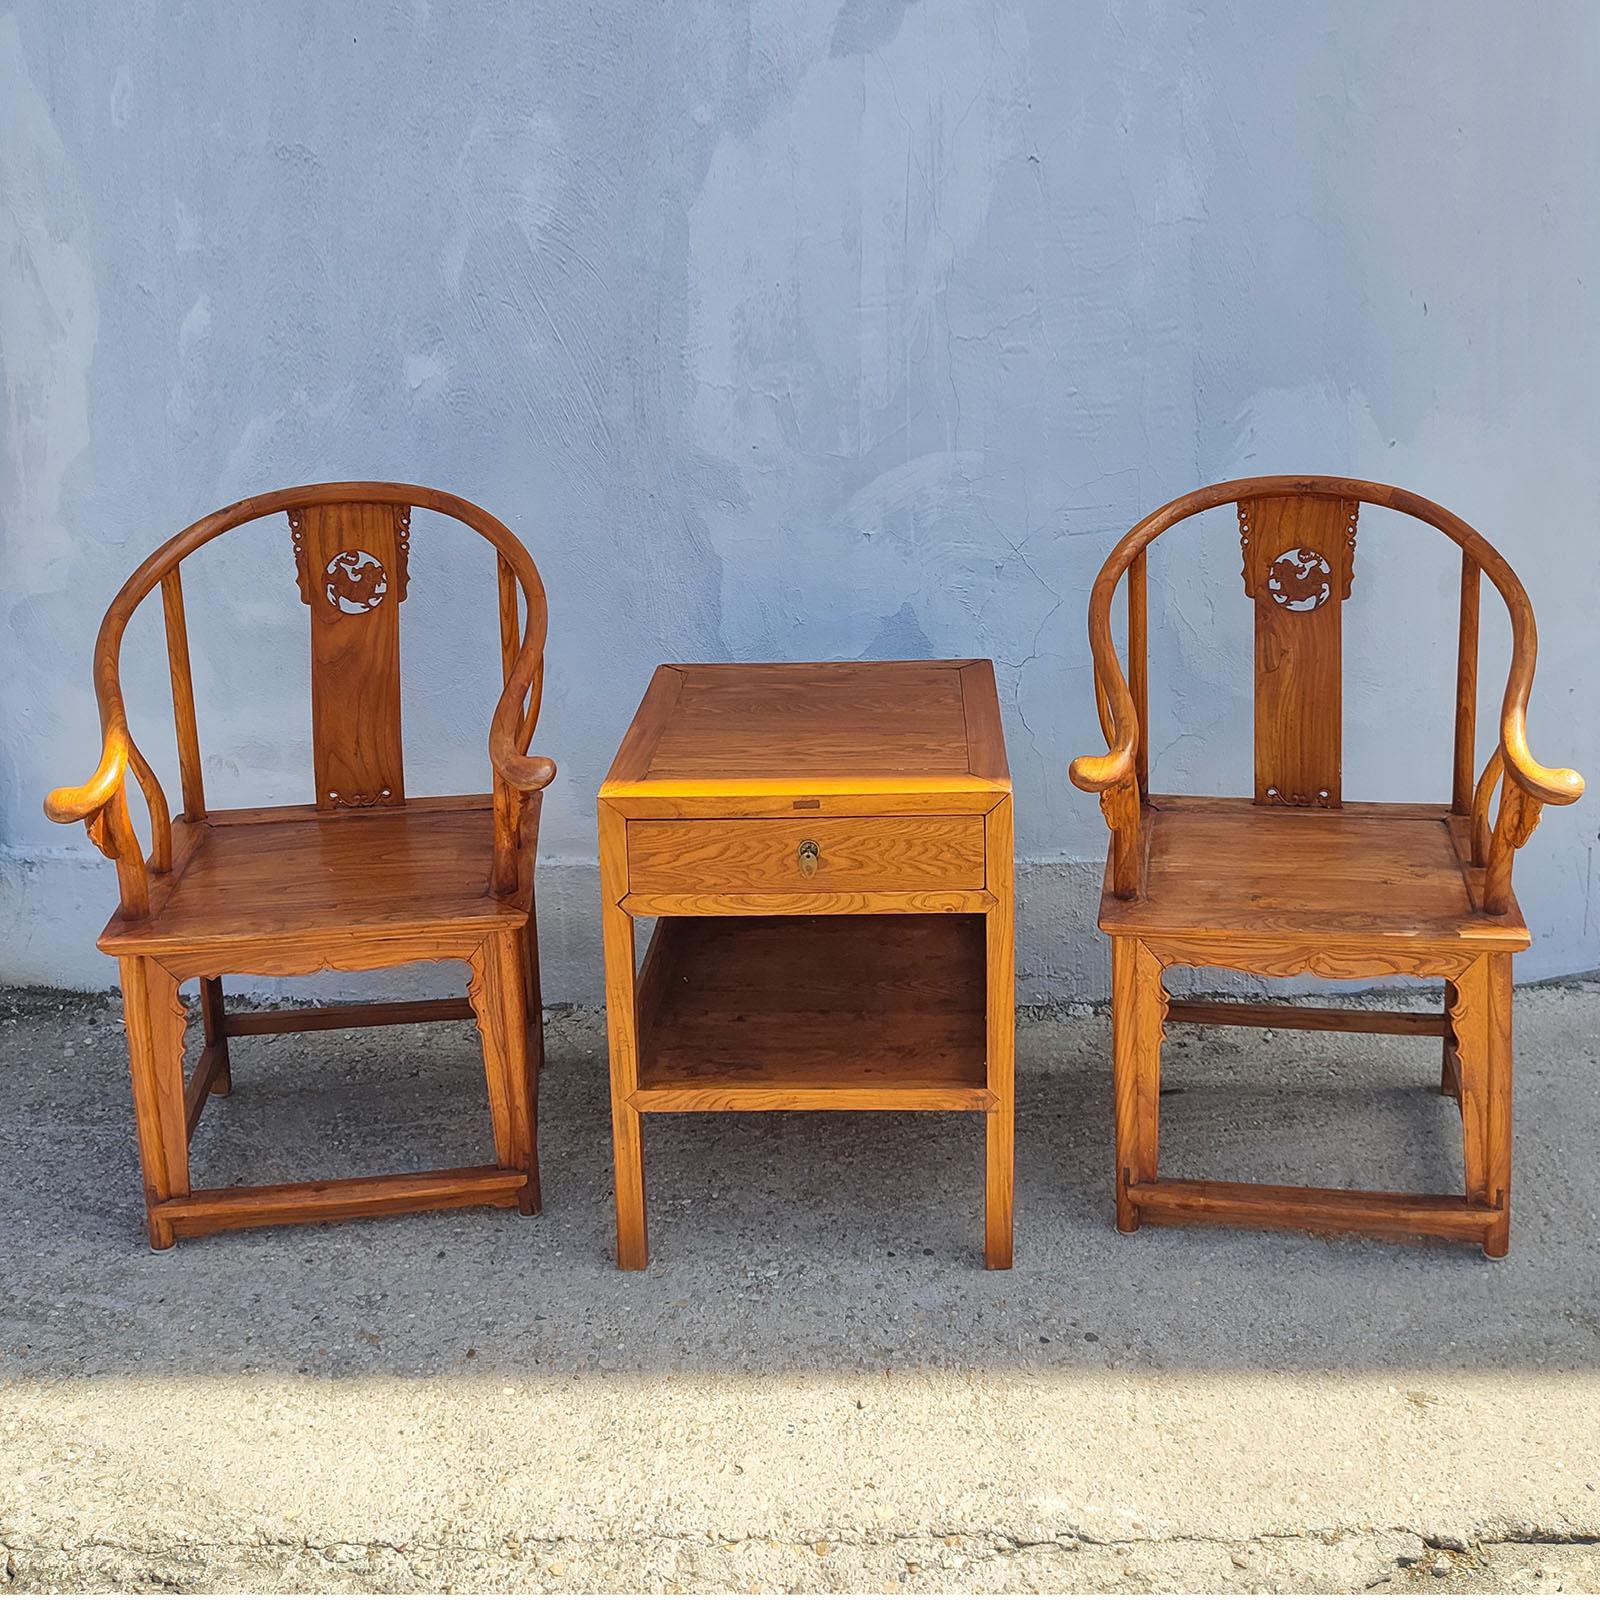 Vintage Chinese Ming Style Natural Wood Horseshoe Pair of Armchairs and Table.
Abmessungen: 
Sessel 68x68x107cm
Tisch 60x60x74cm
Guter Gesamtzustand, normale altersgemäße Abnutzung.

Ein Paar Holzsessel mit hufeisenförmiger Rückenlehne aus der Mitte